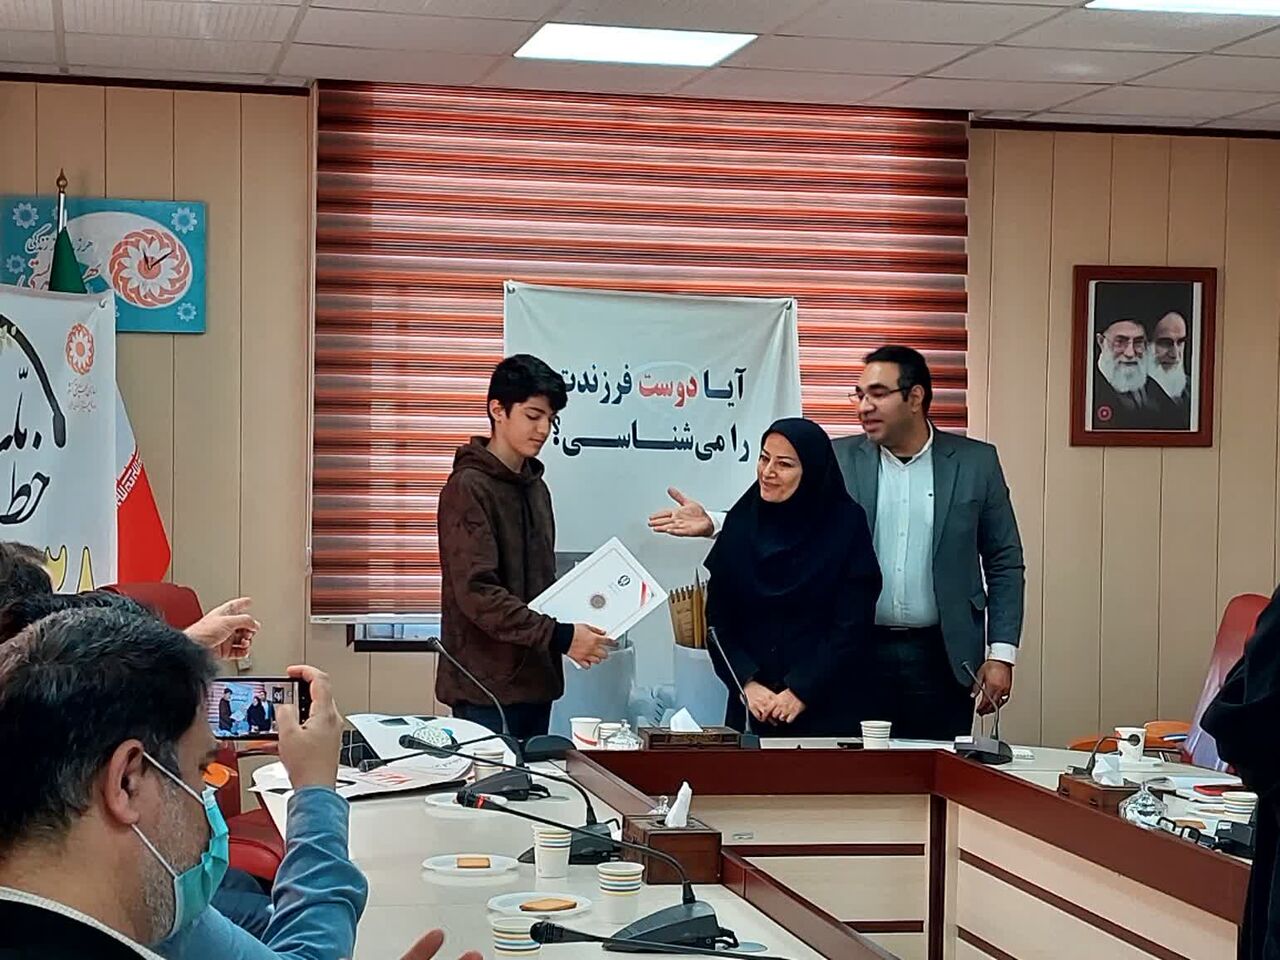 دانش آموز البرزی رتبه اول جشنواره یاریگران زندگی کشور را کسب کرد